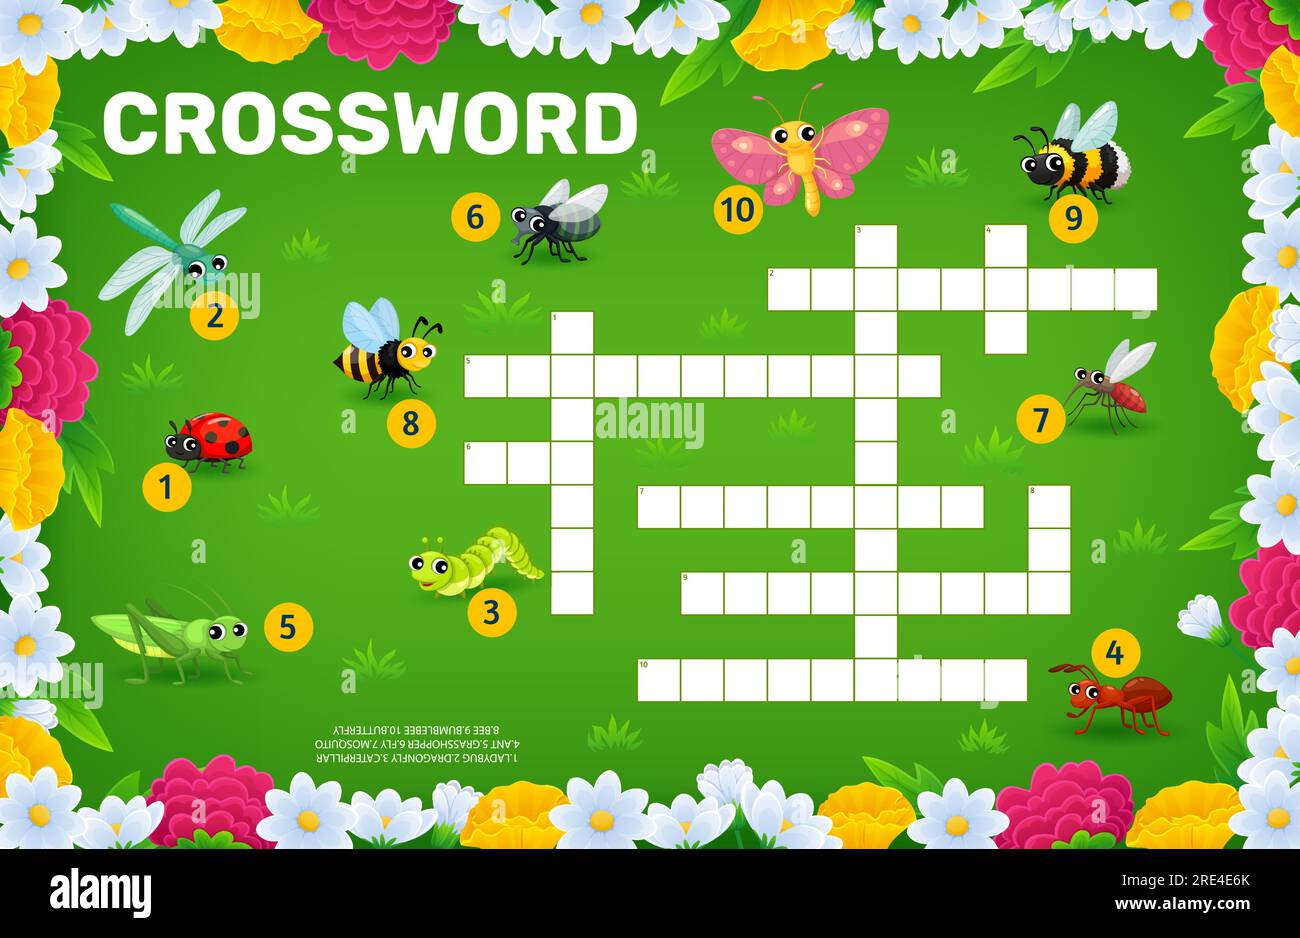 meadow crossword